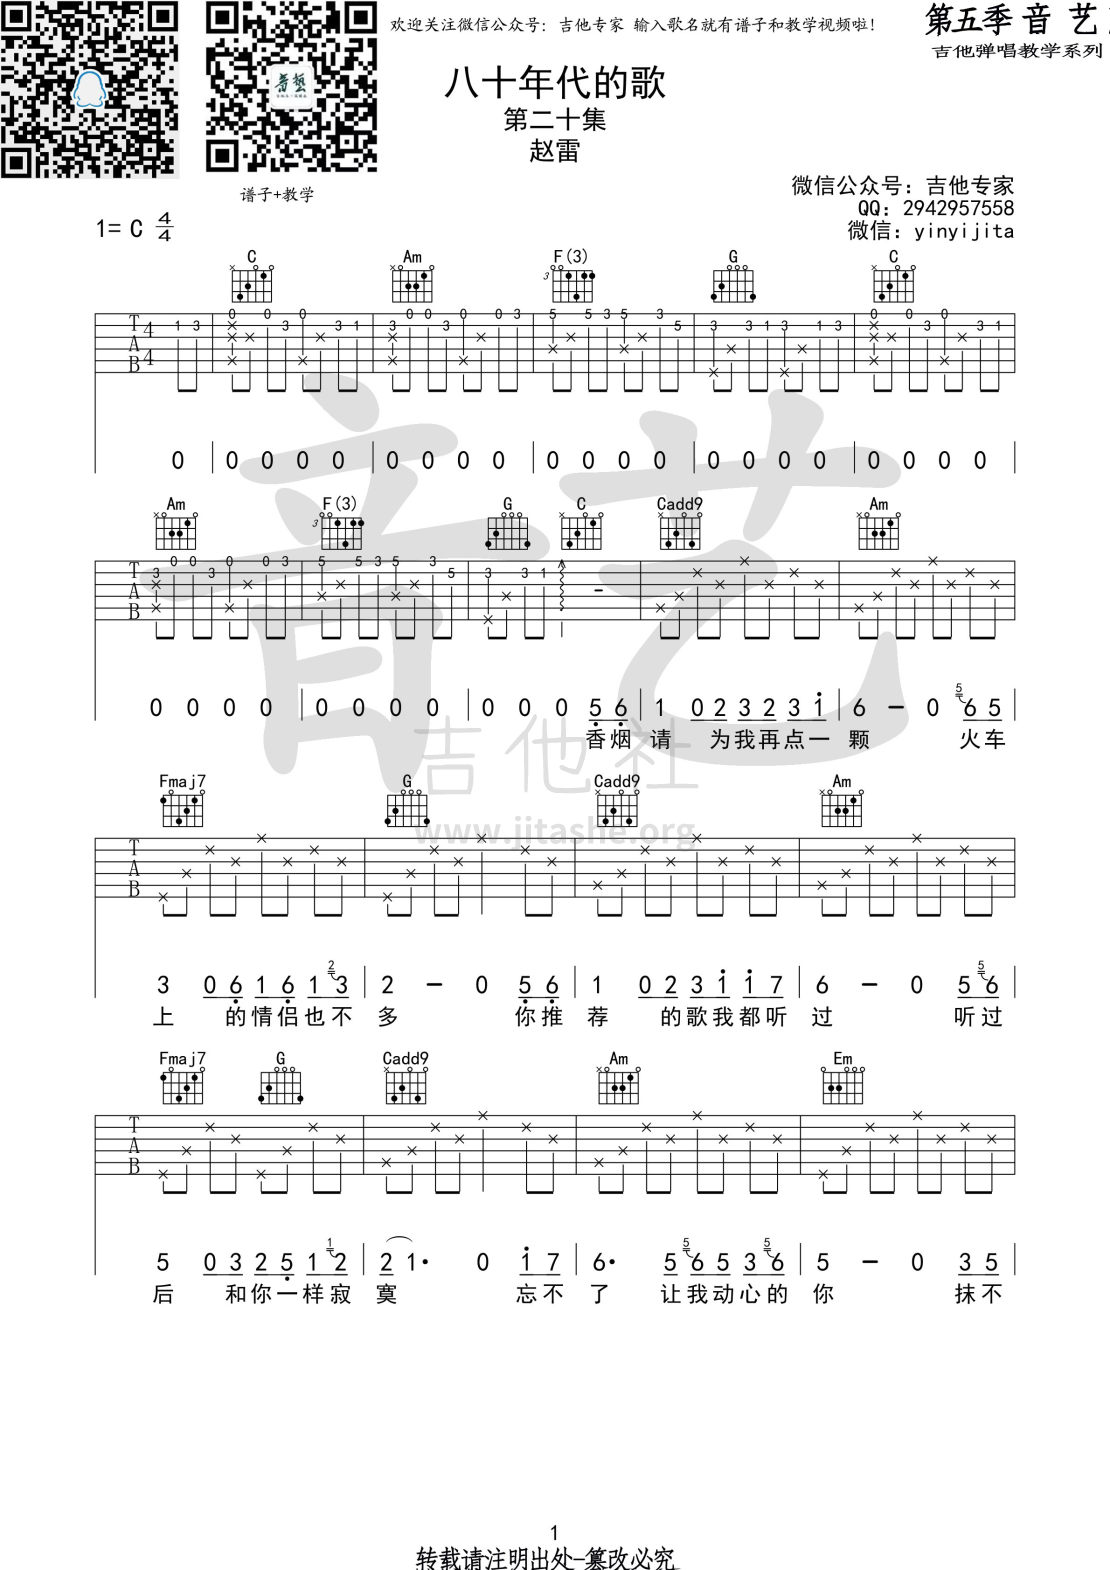 打印:八十年代的歌吉他谱_赵雷(雷子)_八十年代的歌1 第五期 第二十集.jpg